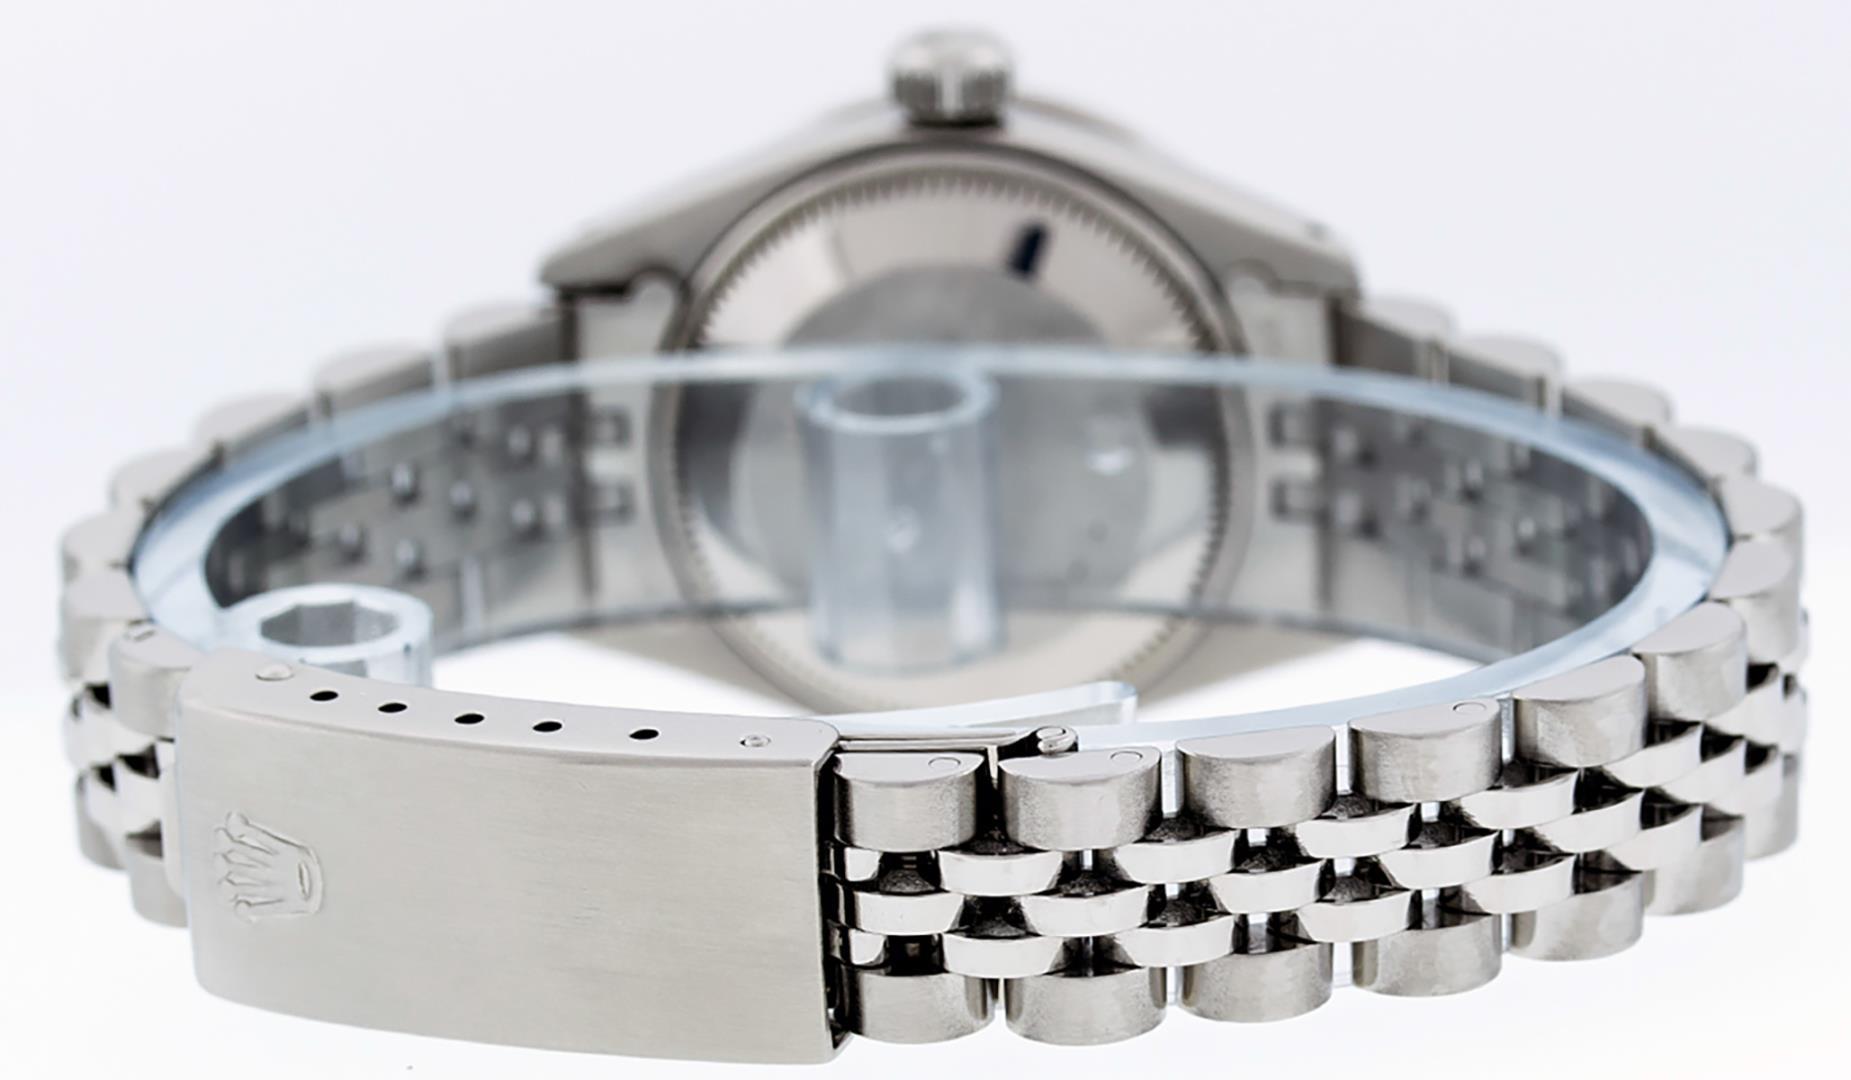 Rolex Ladies Stainless Steel Silver Roman Datejust Wristwatch